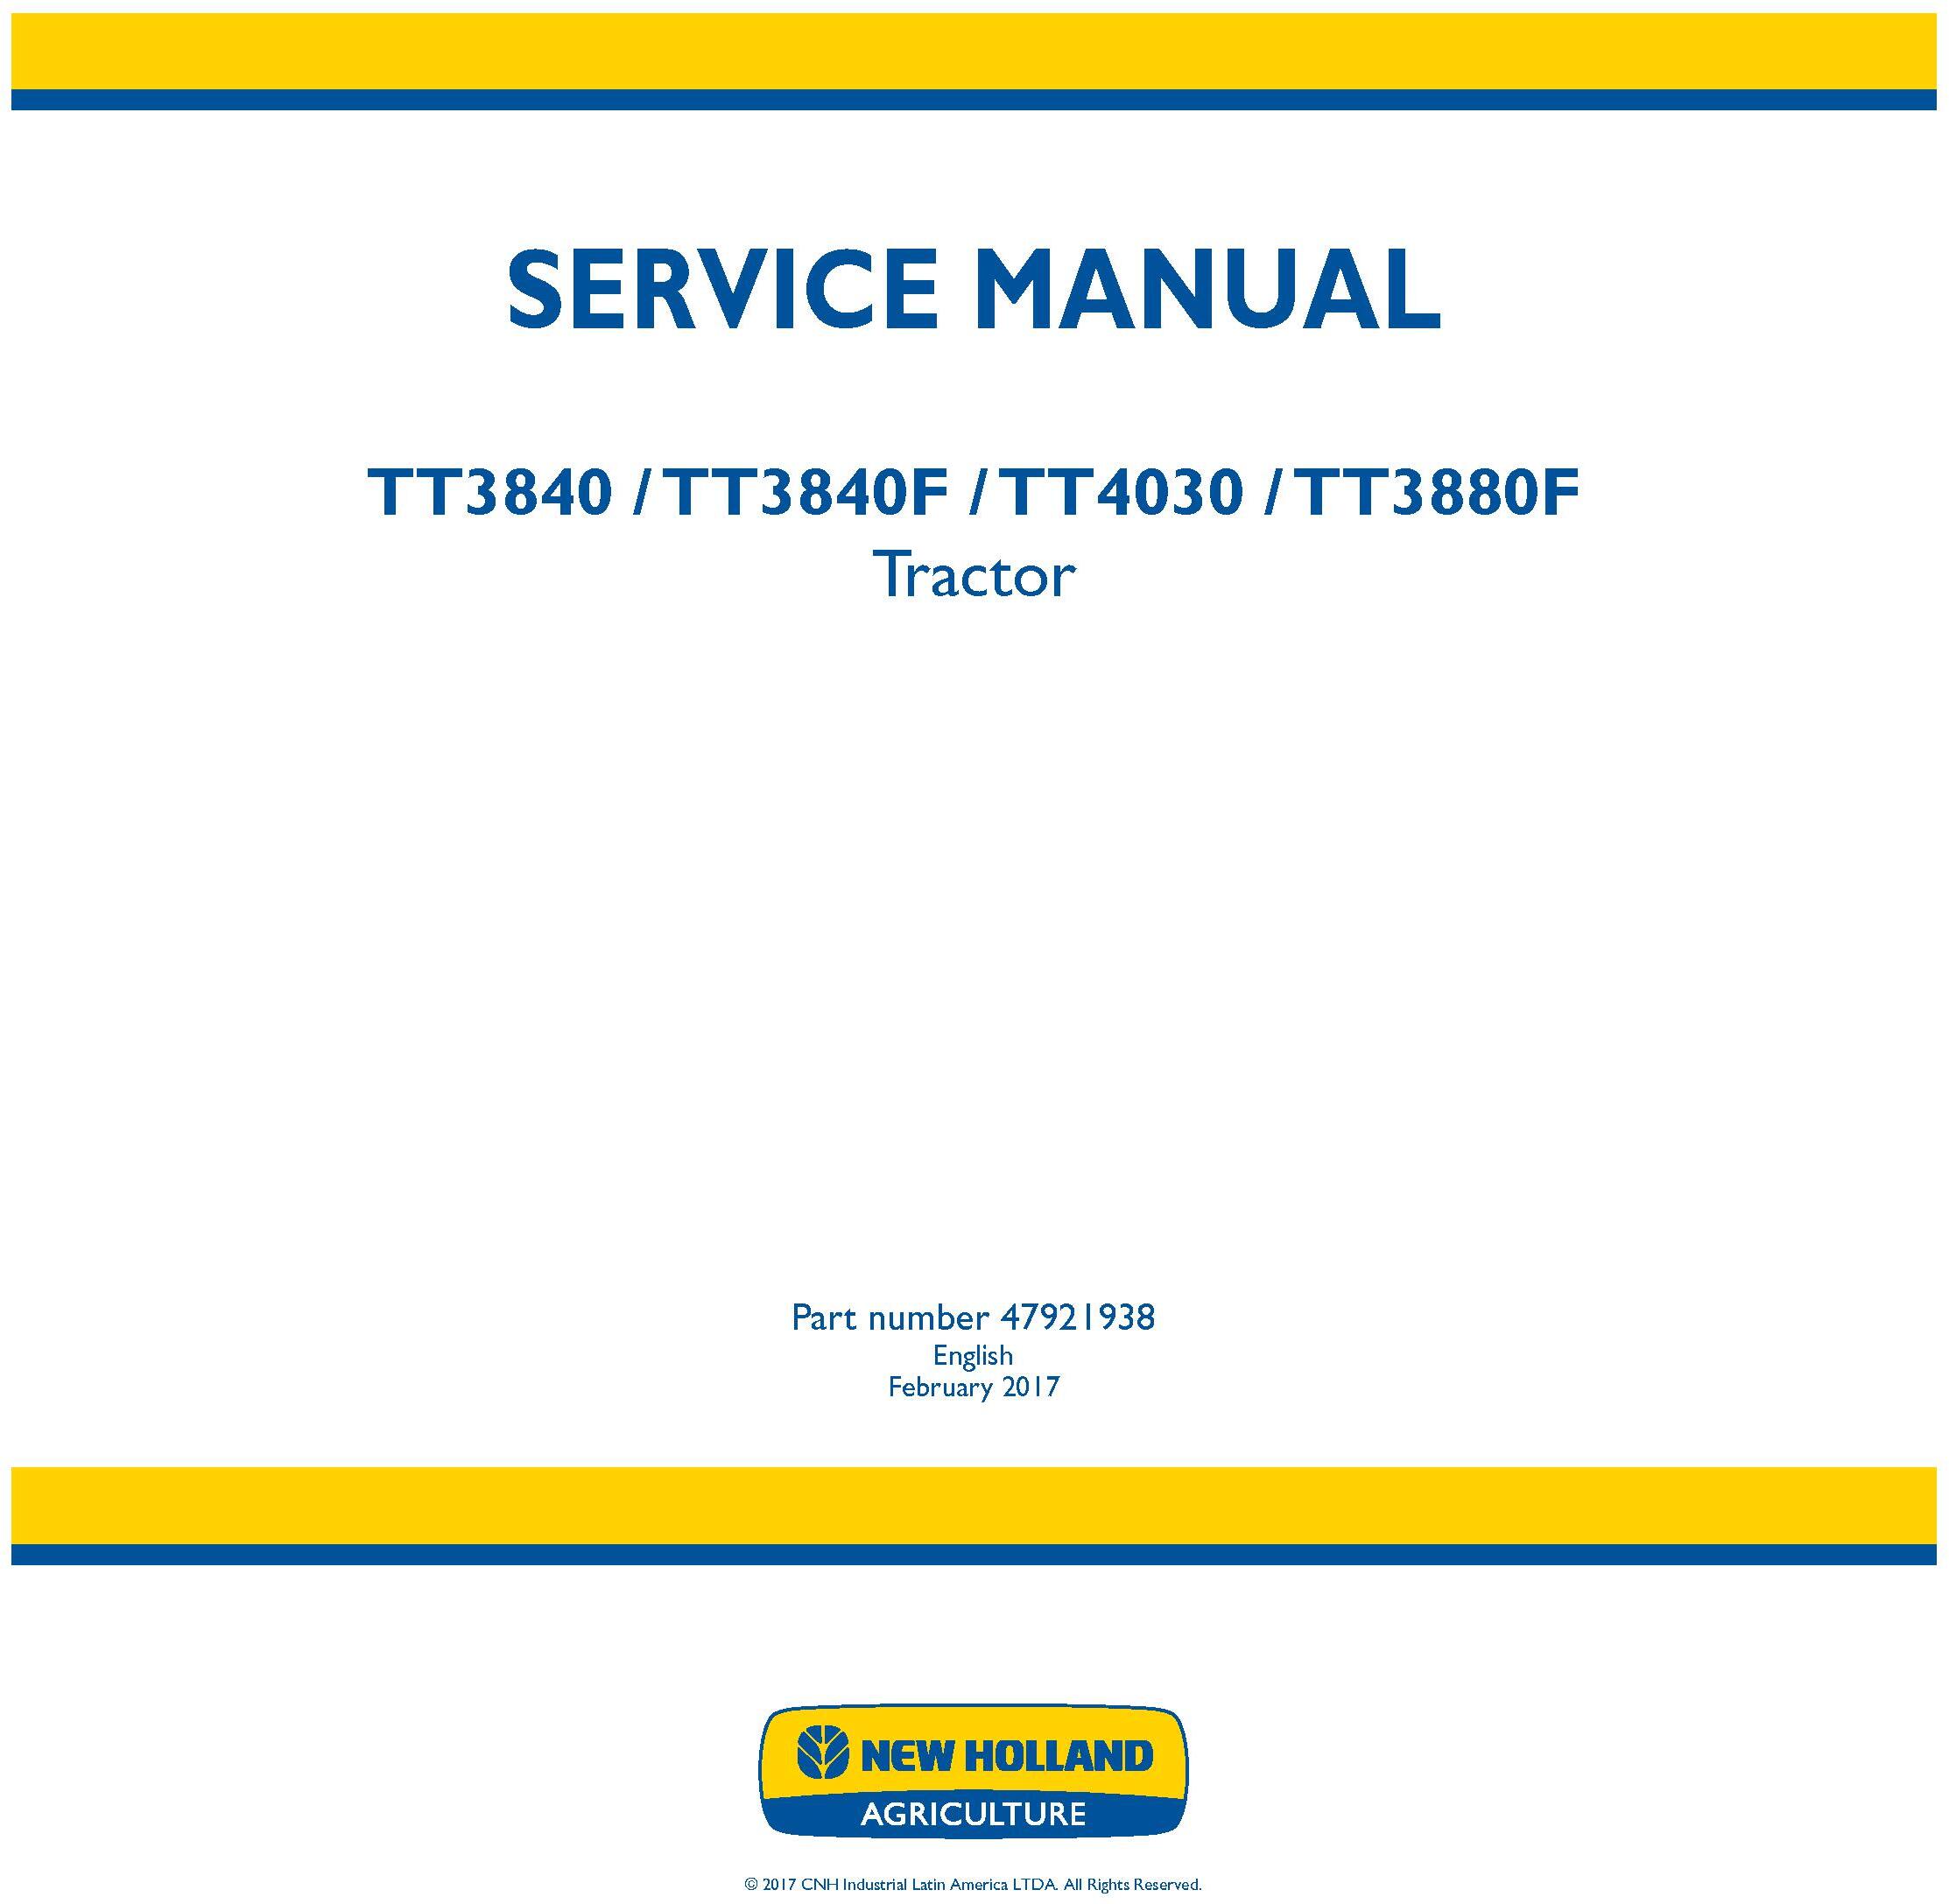 New Holland TT3840, TT3840F, TT4030, TT3880F Tractor Service Manual (Latin America) - 19459